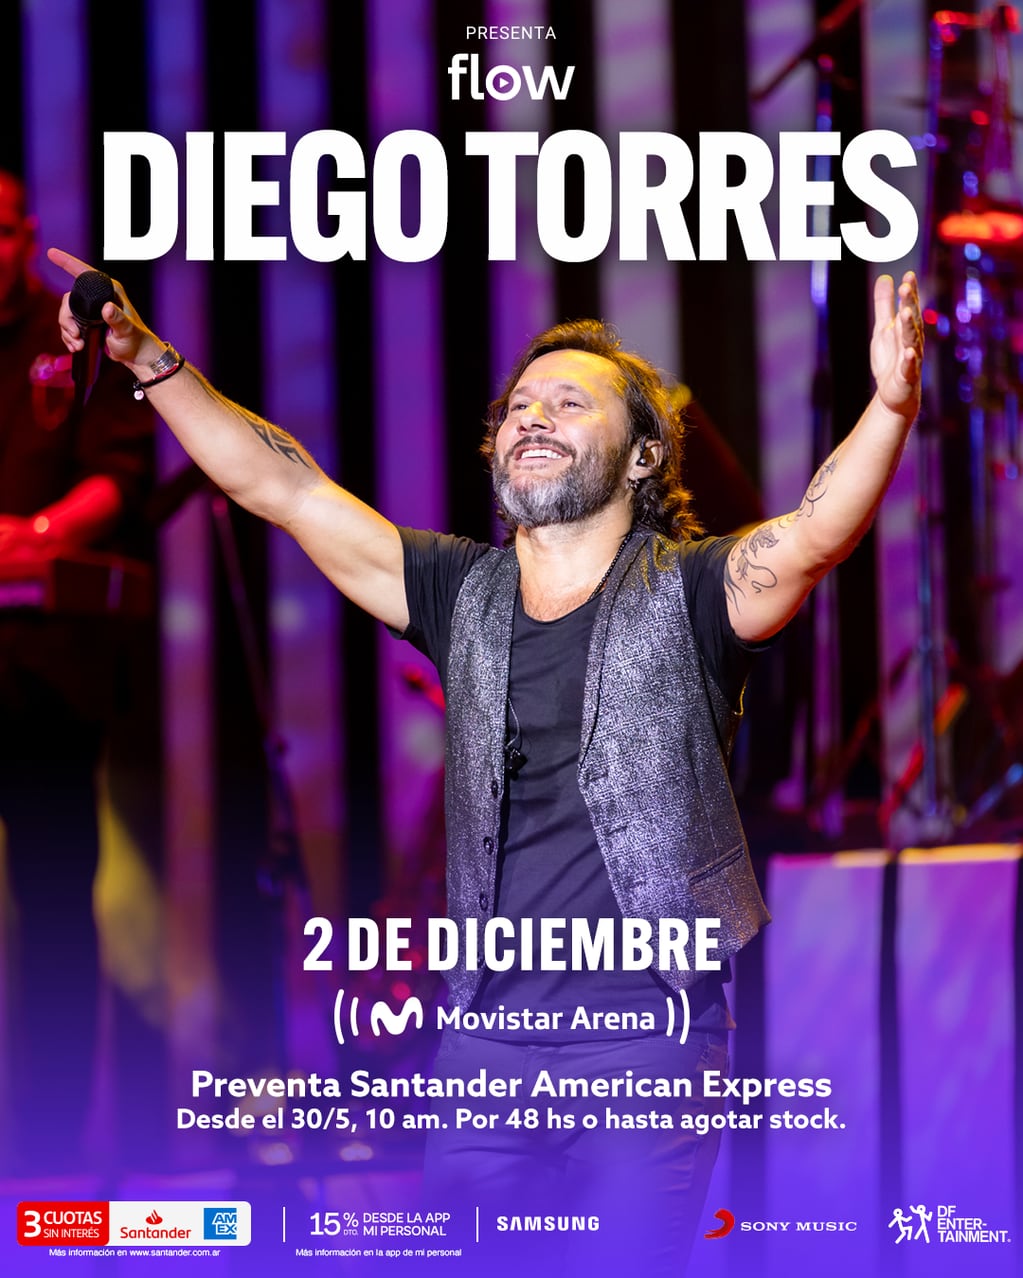 Anuncio del recital de Diego Torres en Argentina